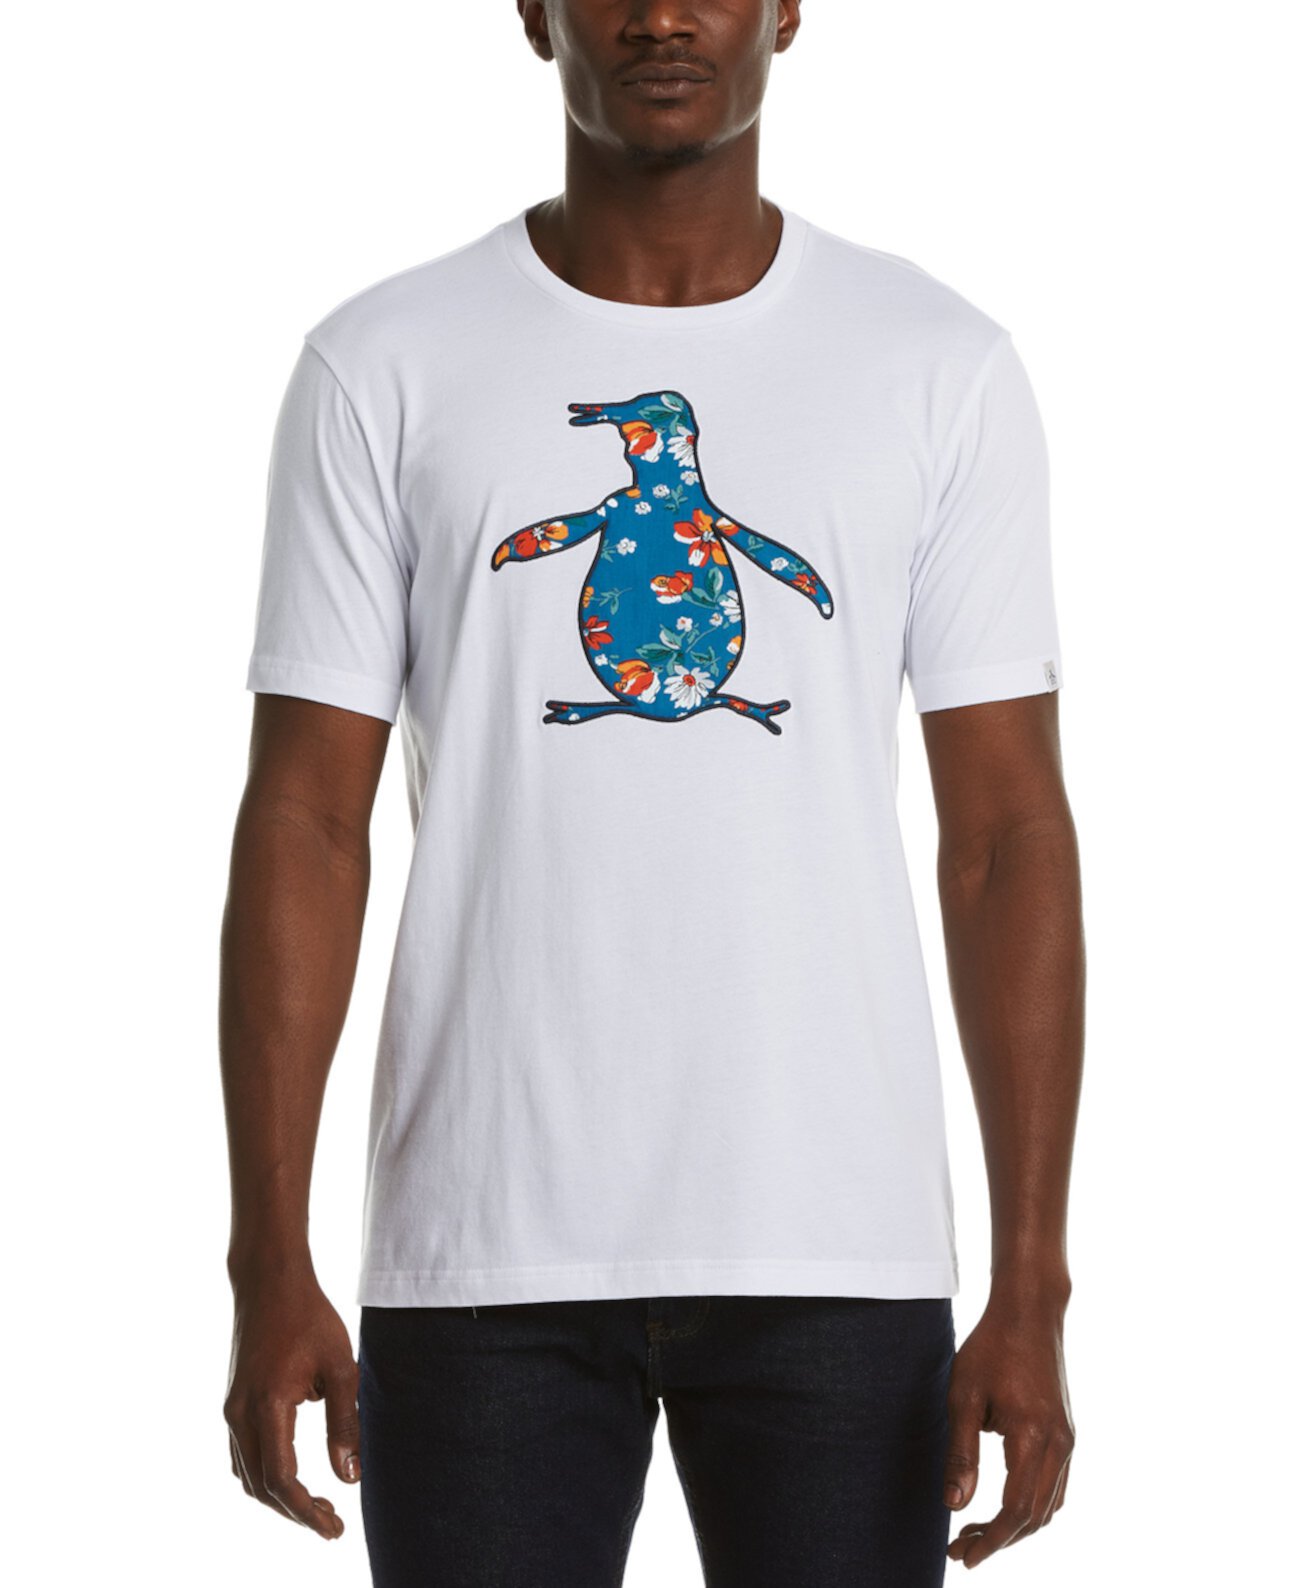 Мужская футболка Pete с цветочным наполнением Original Penguin